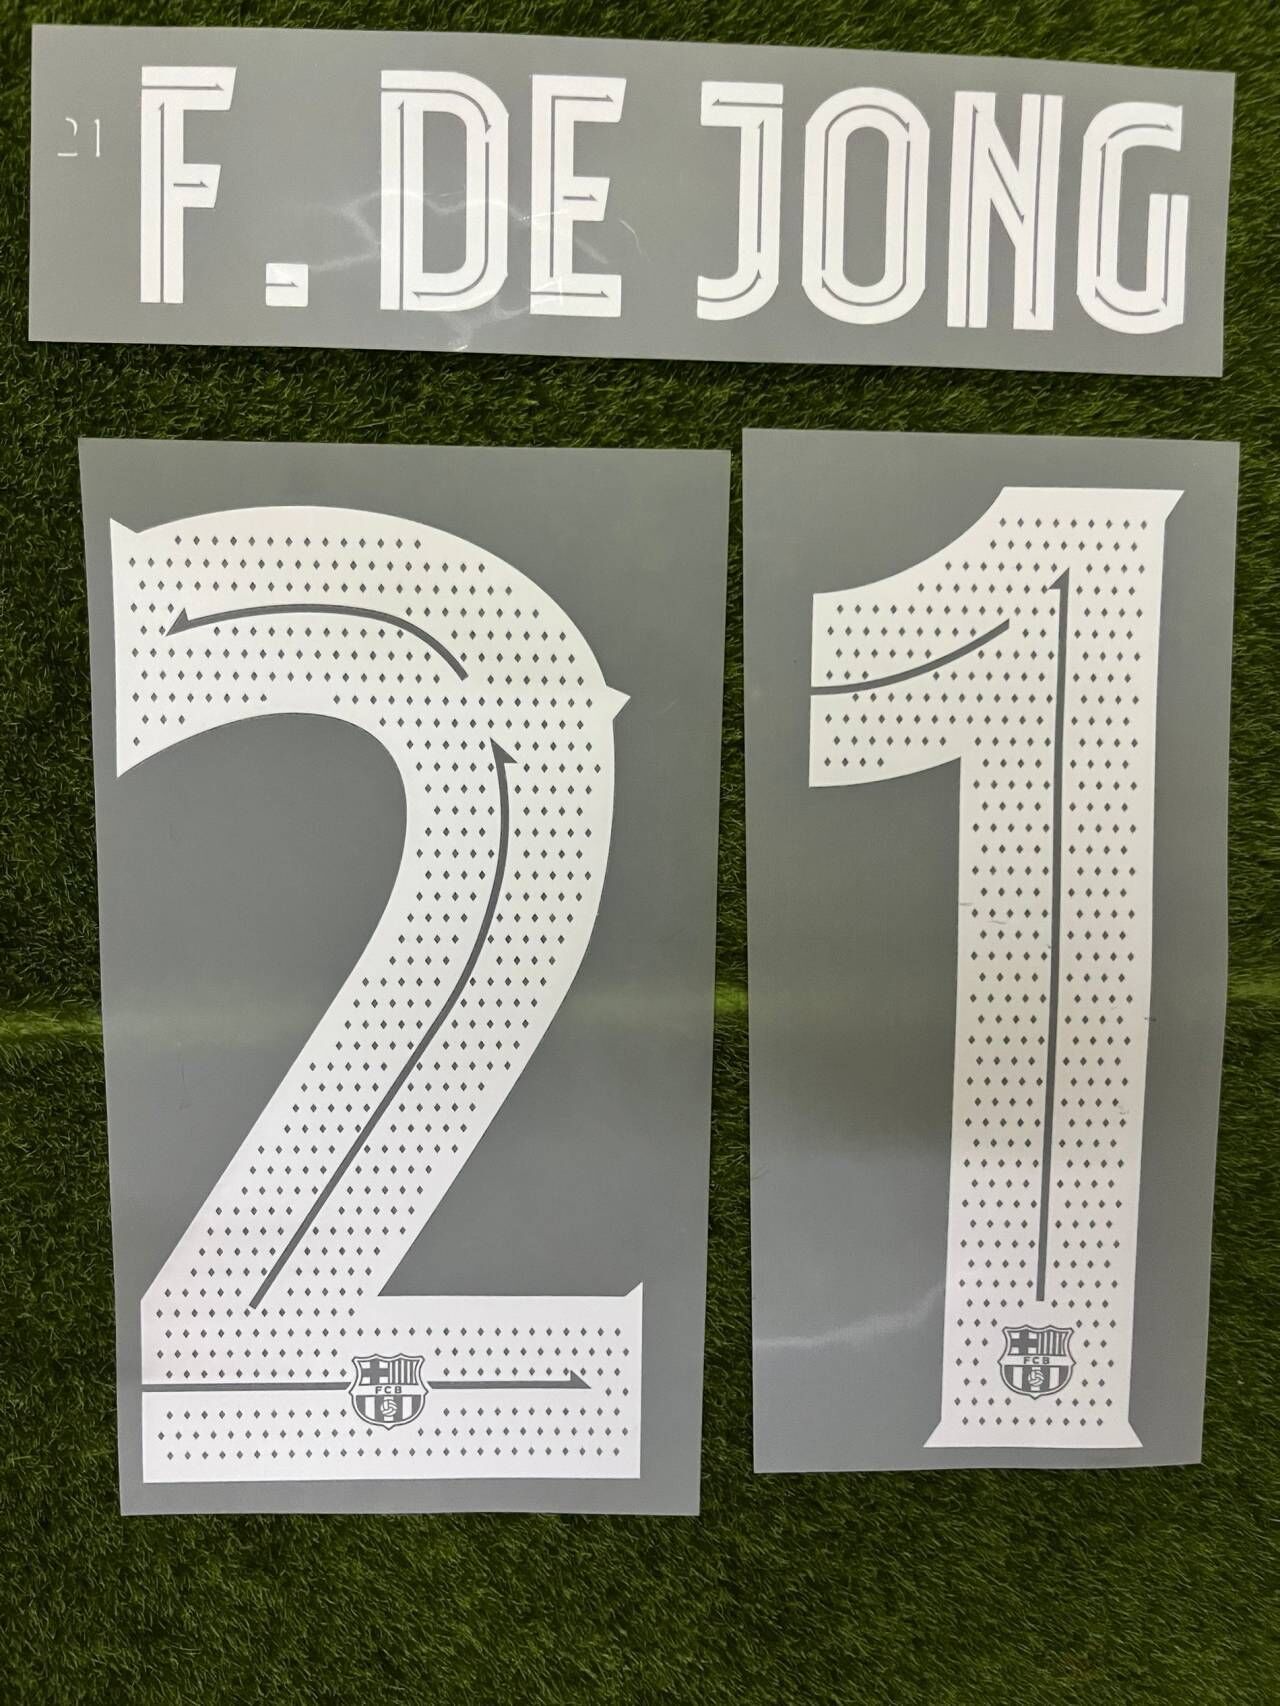 #21 F.DE JONG